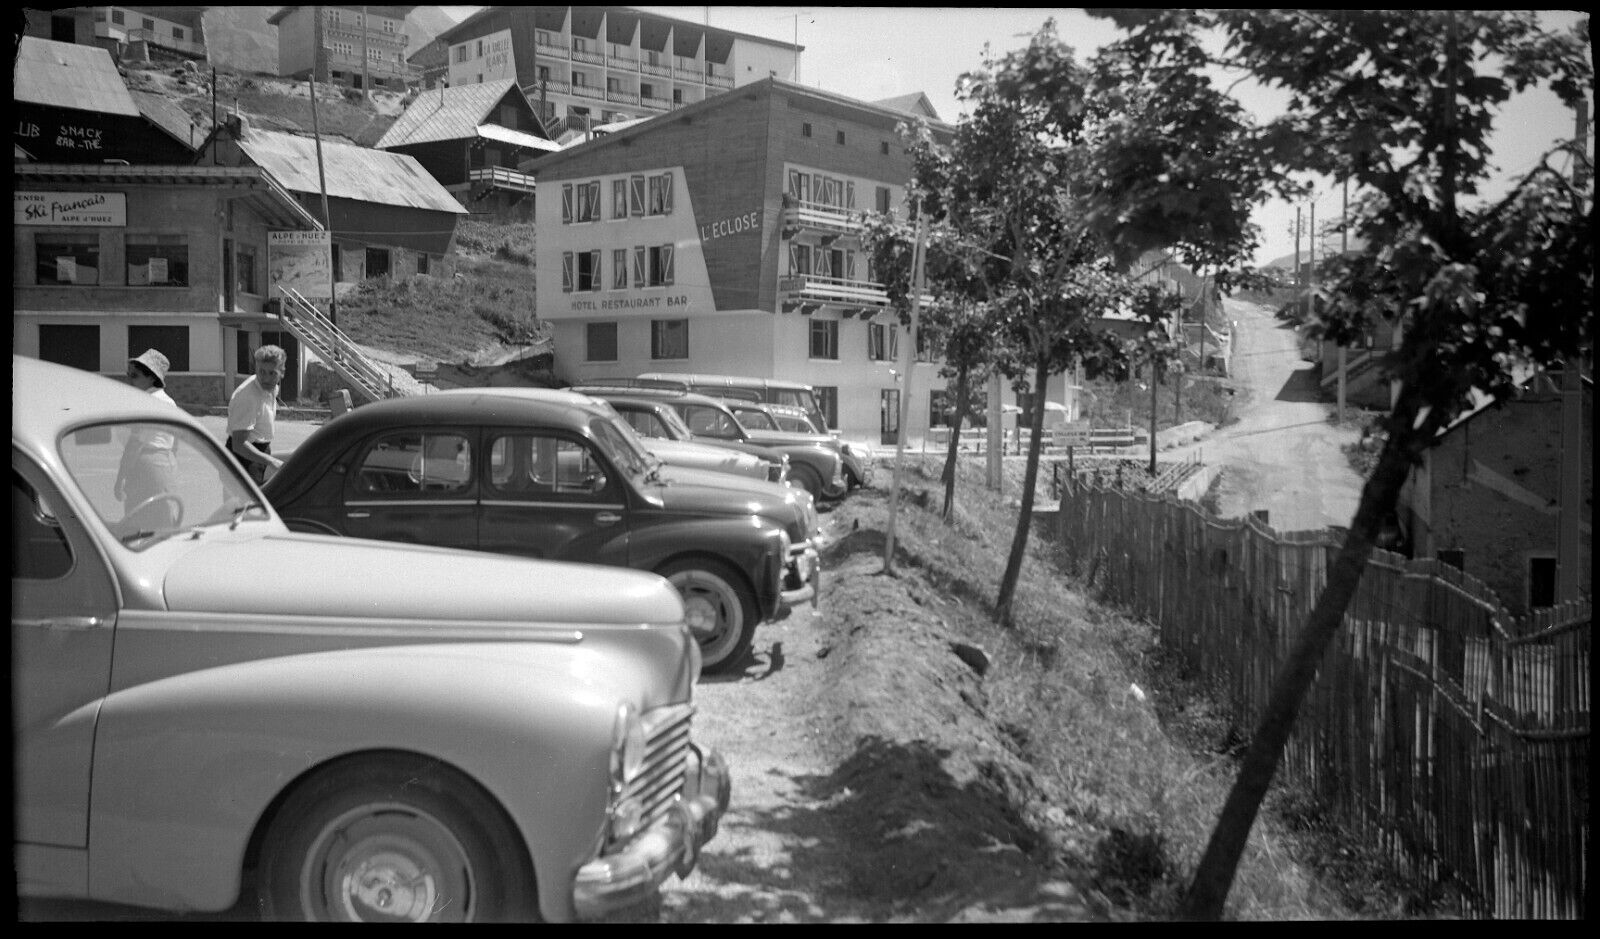 Landscape Alpes d\'Huez l\'Eclose Peugeot cars - old photo negative year 1950